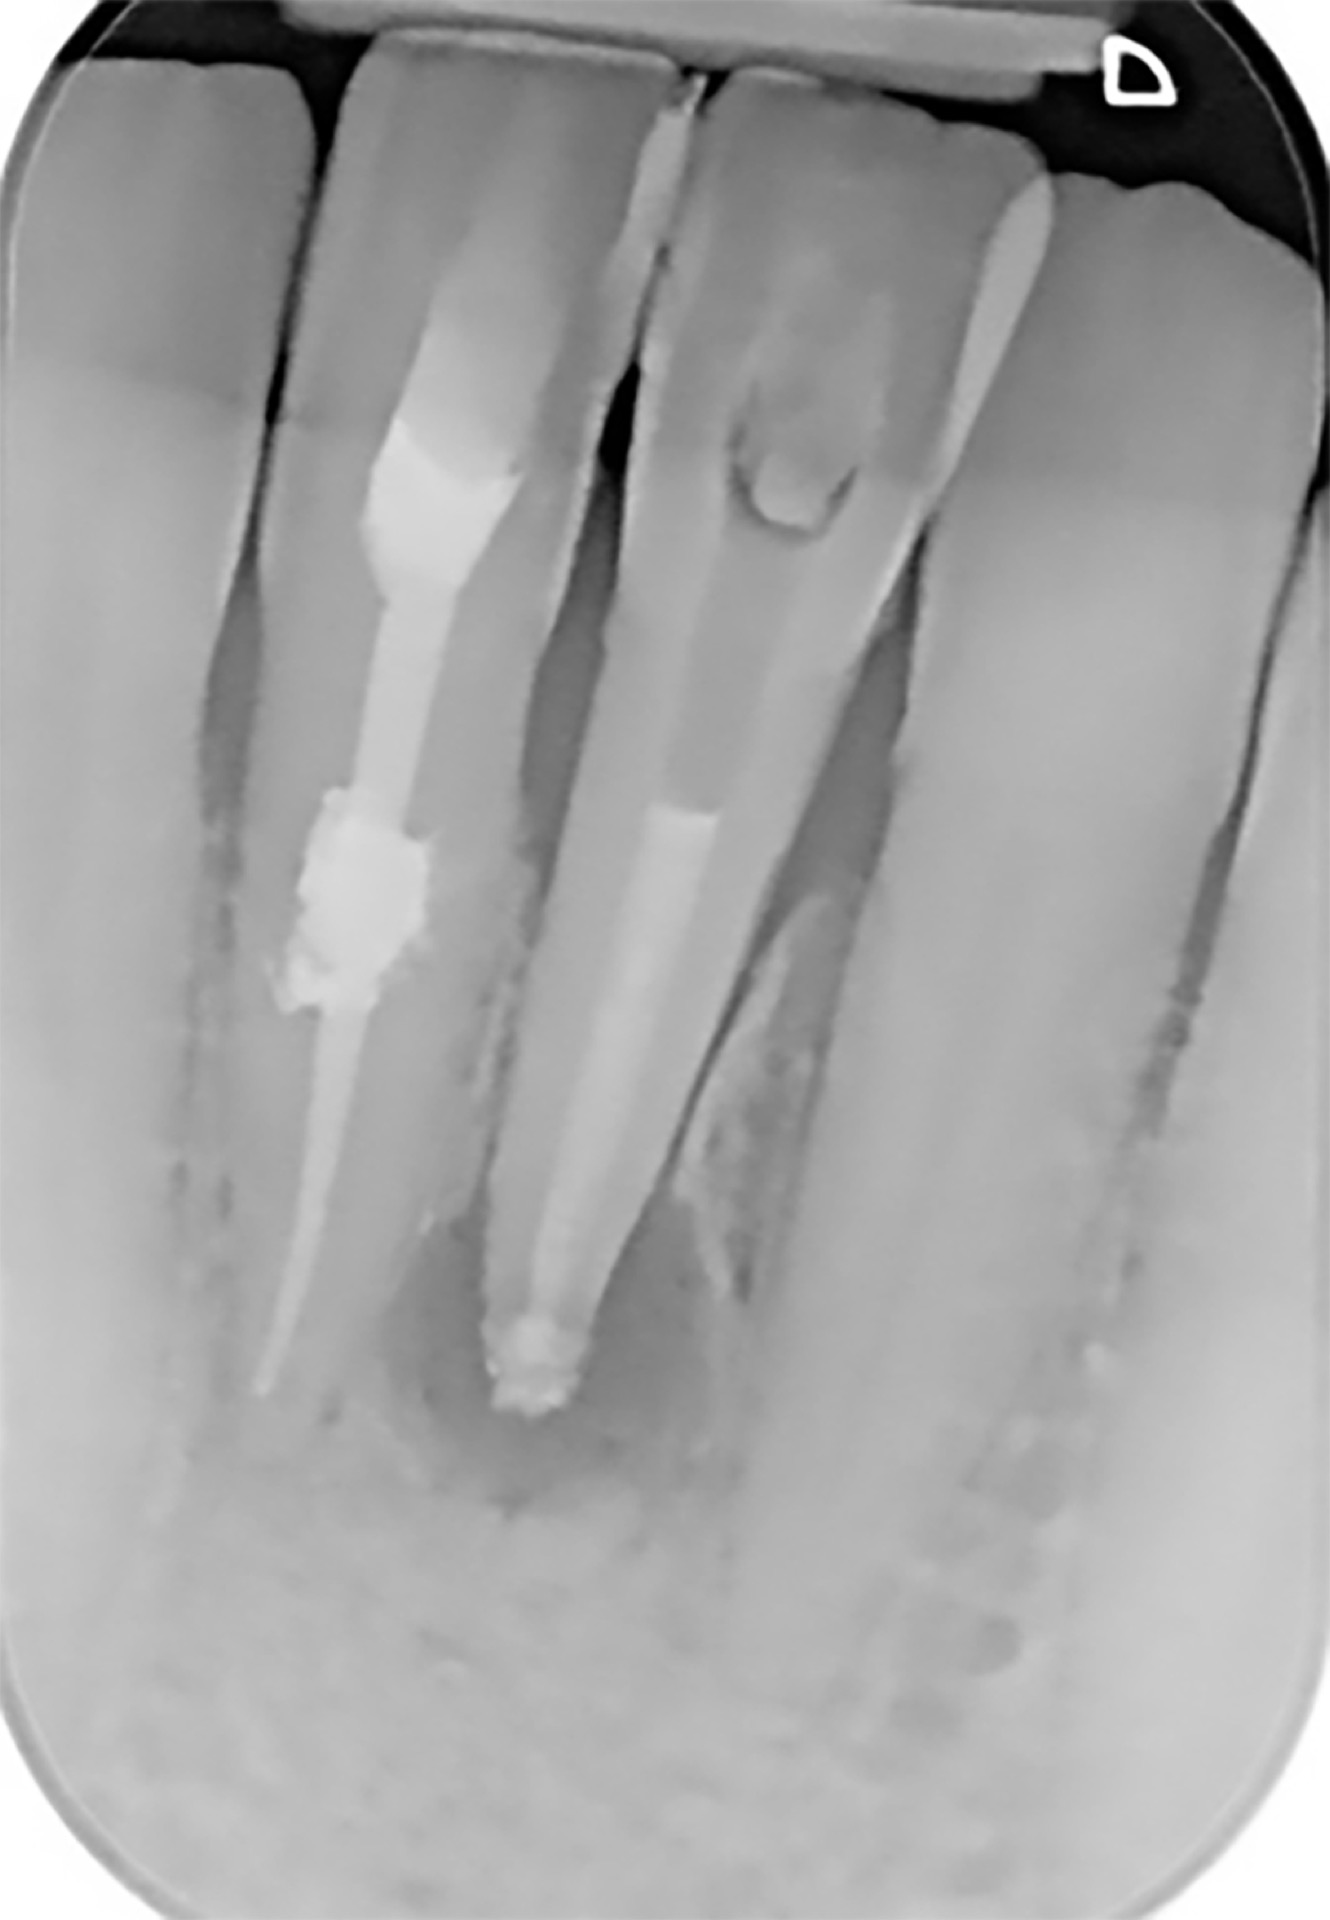 Ακτινογραφία μετά τις επιτυχείς ενδοδοντικές θεραπείες (απονευρώσεις) του πλάγιου και του κεντρικού τομέα της αριστερής πλευράς της κάτω γνάθου